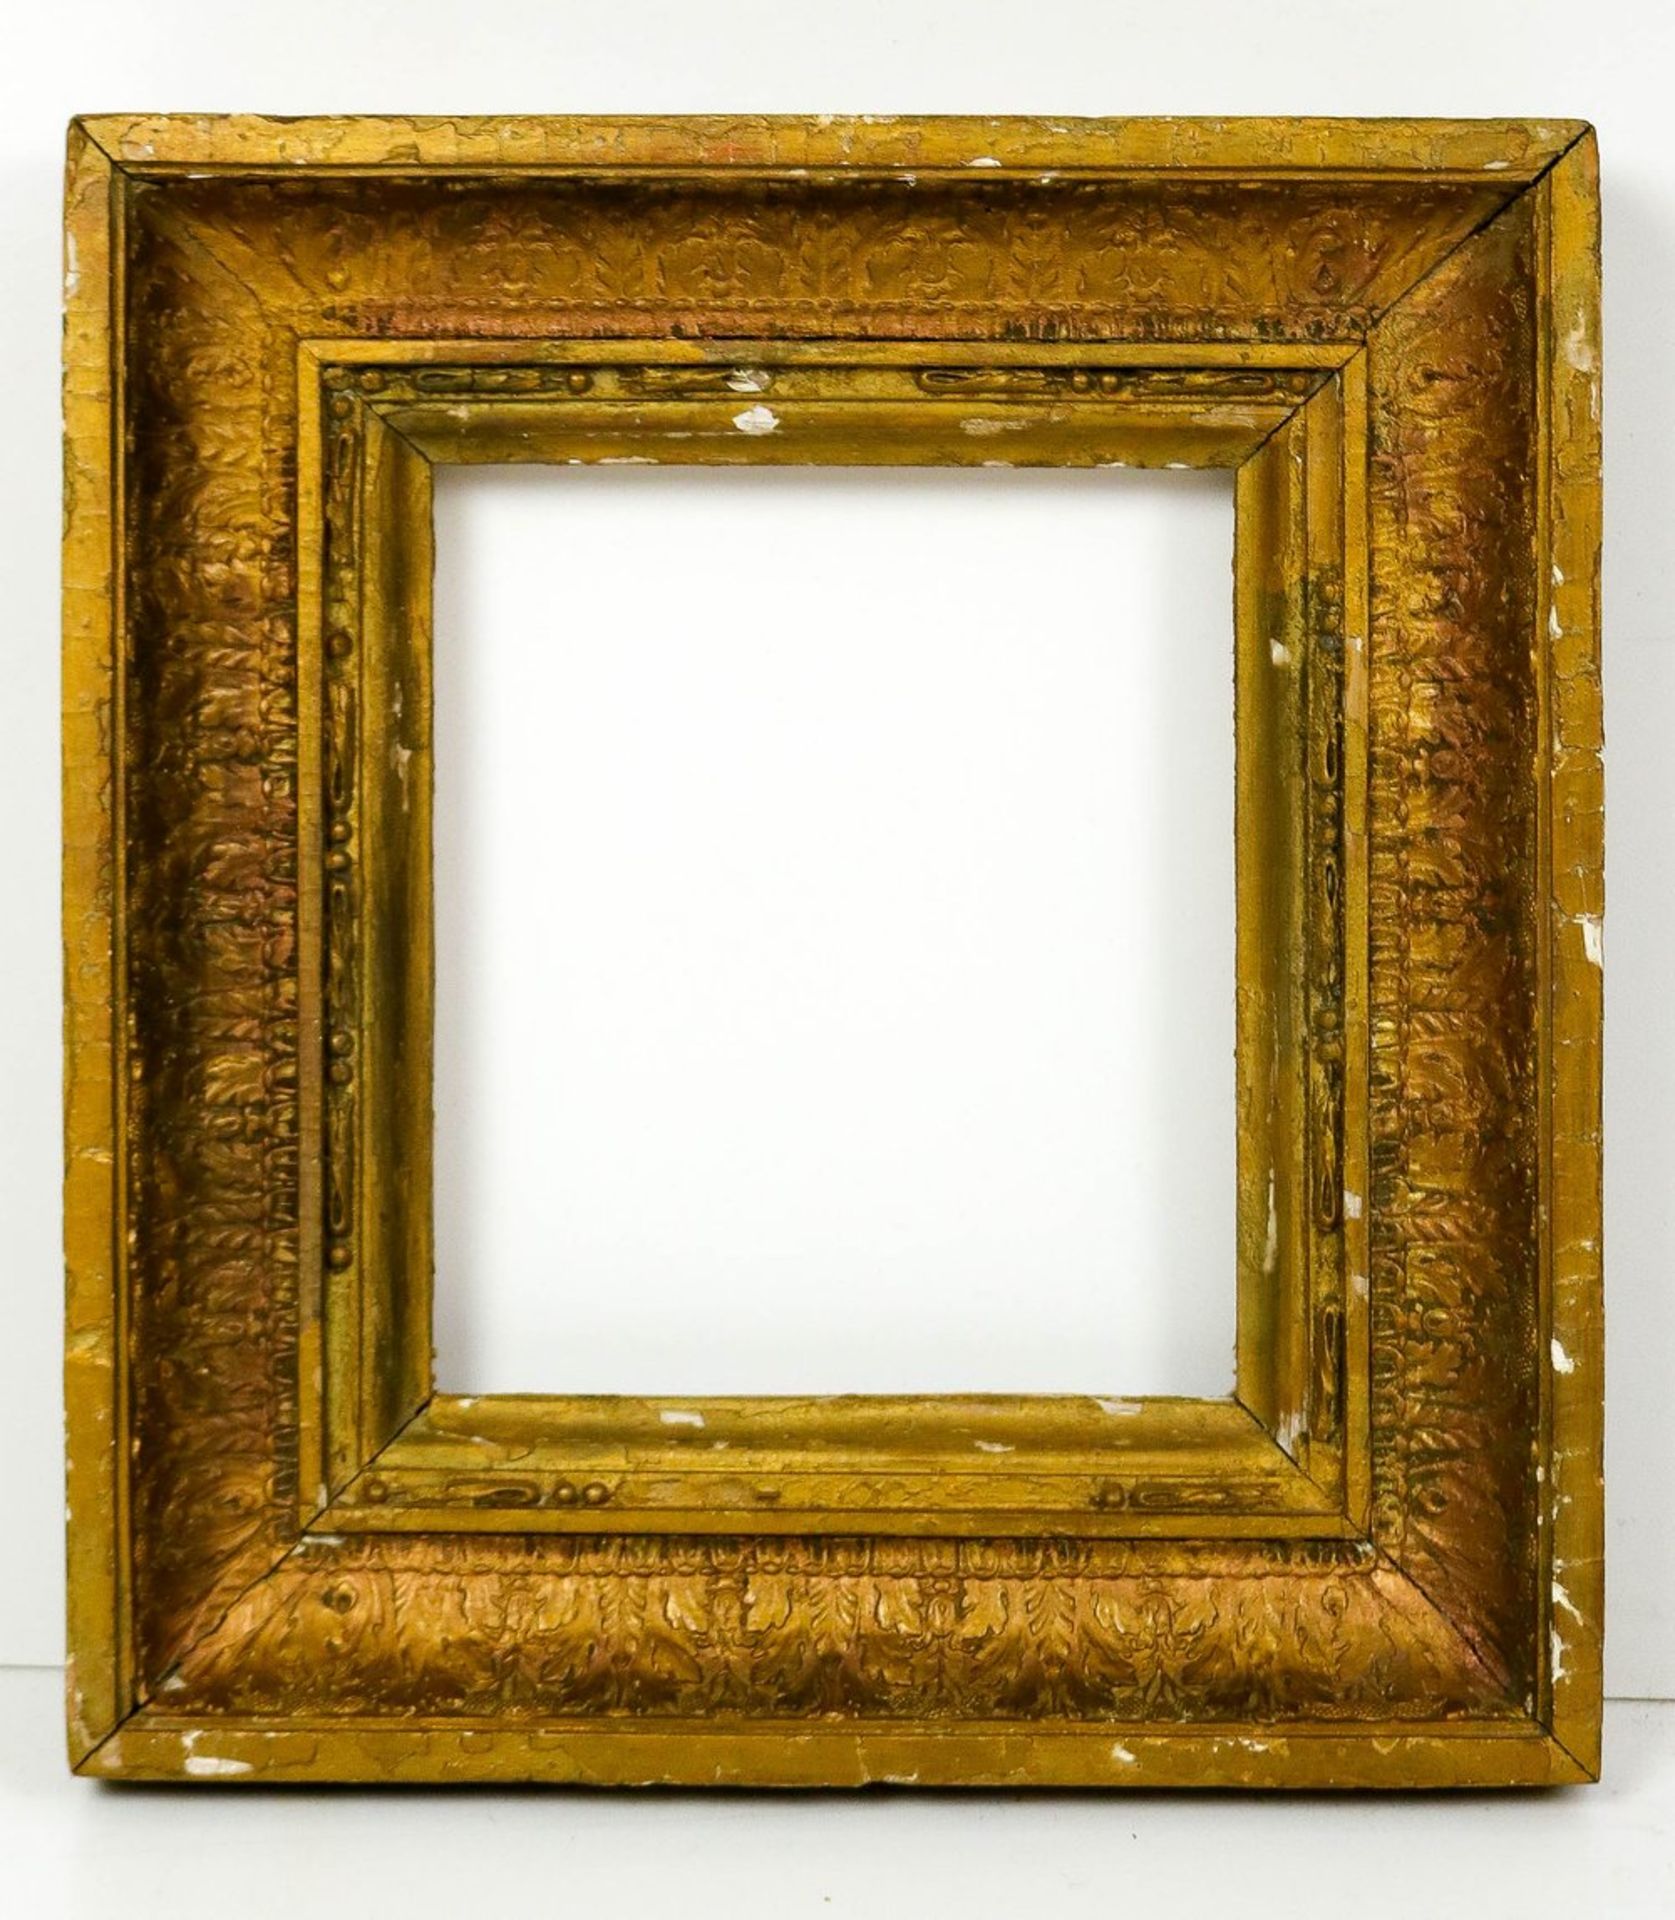 Rahmen im Barockstil Holz geschnitzt mit Stuckauflage vergoldet. Vorgekehlte Doppelrahmu - Bild 6 aus 6